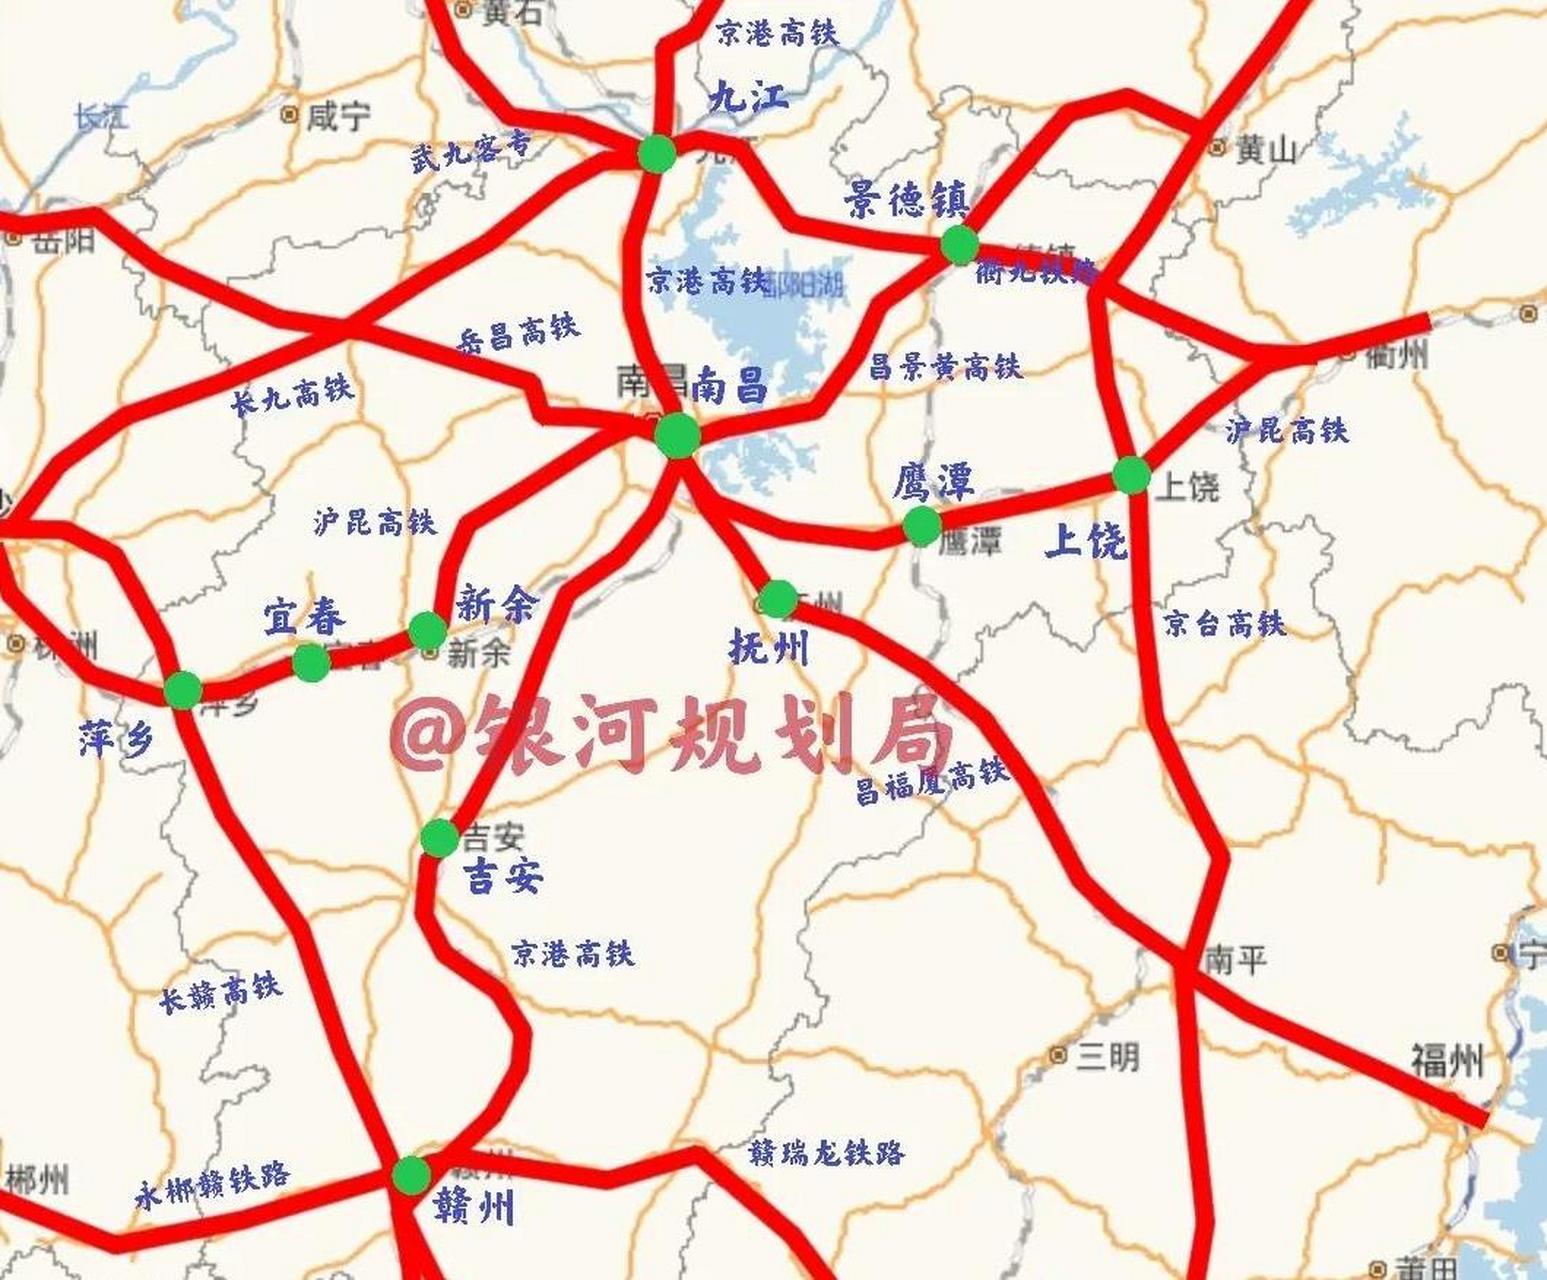 江西省高铁网络图图片